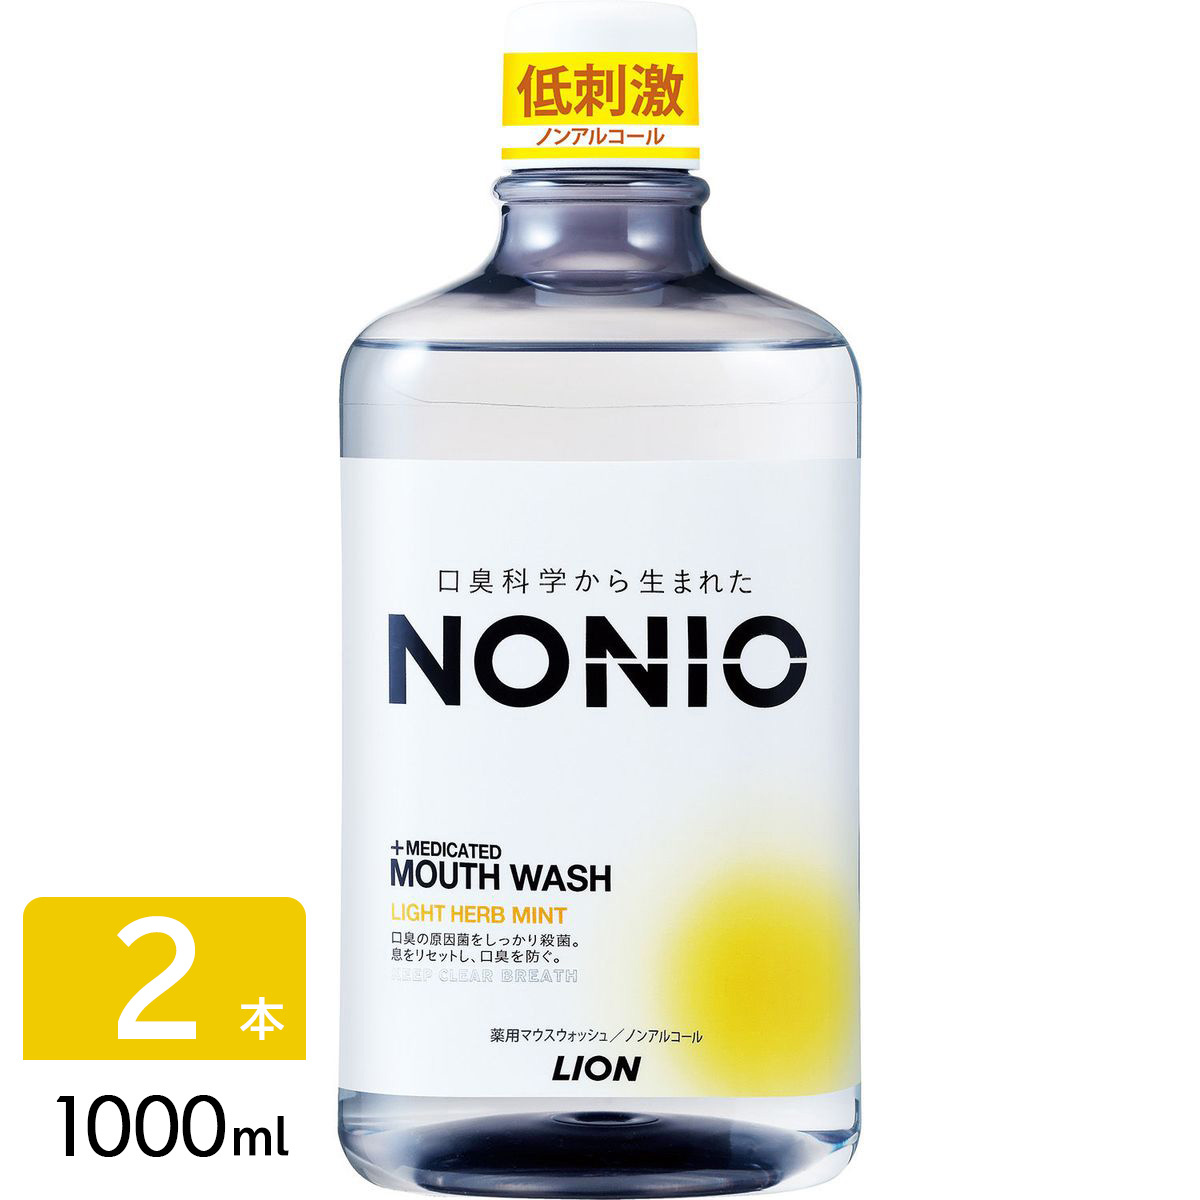 NONIO ノニオ マウスウォッシュ 洗口液 ノンアルコール ライトハーブミント 1000ml 2本